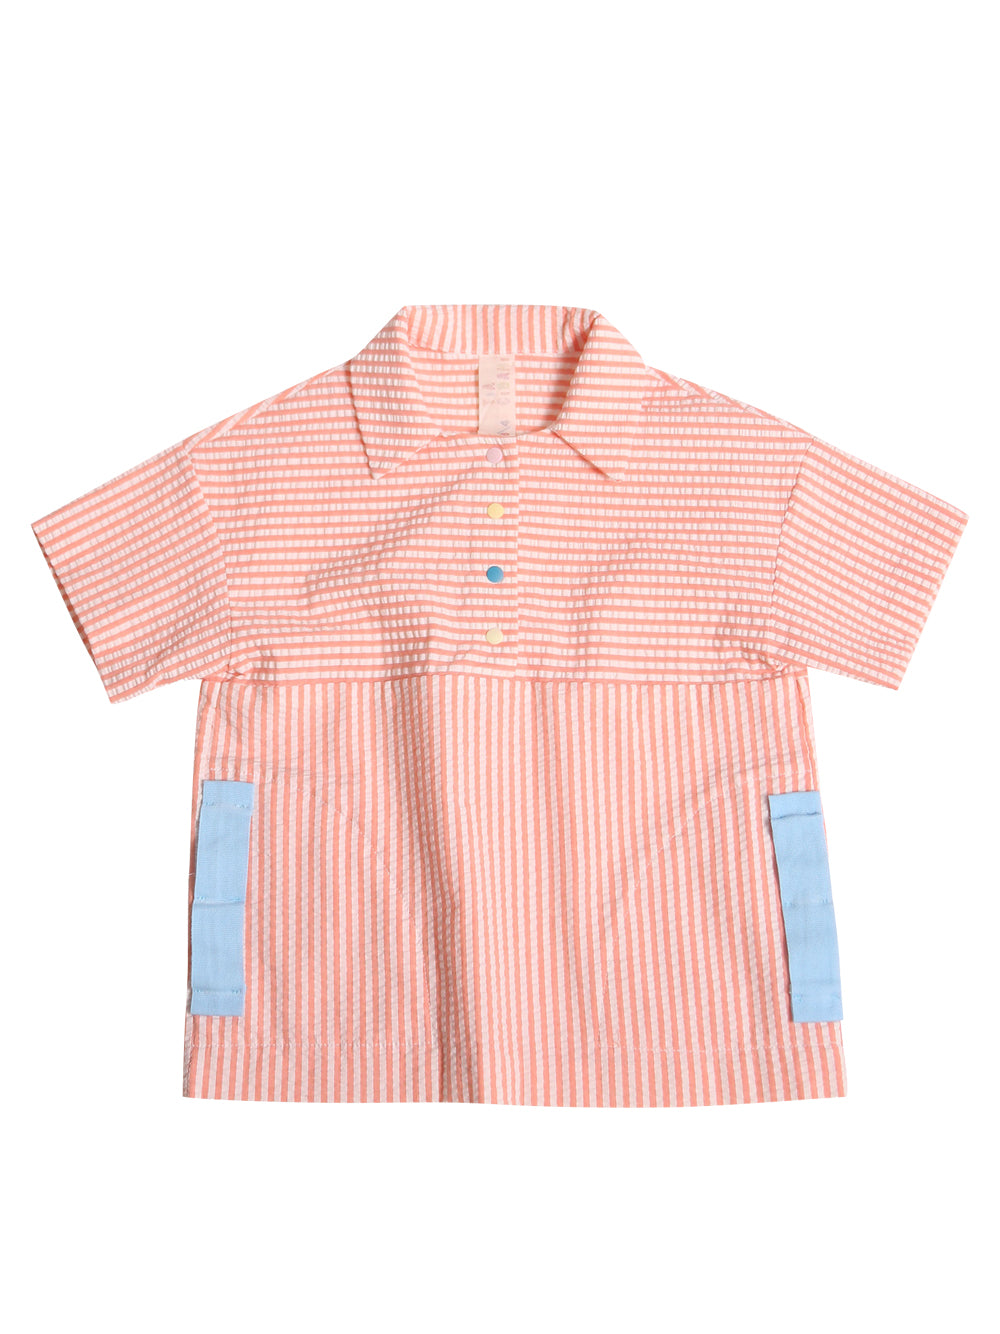 Frank Golf Shirt